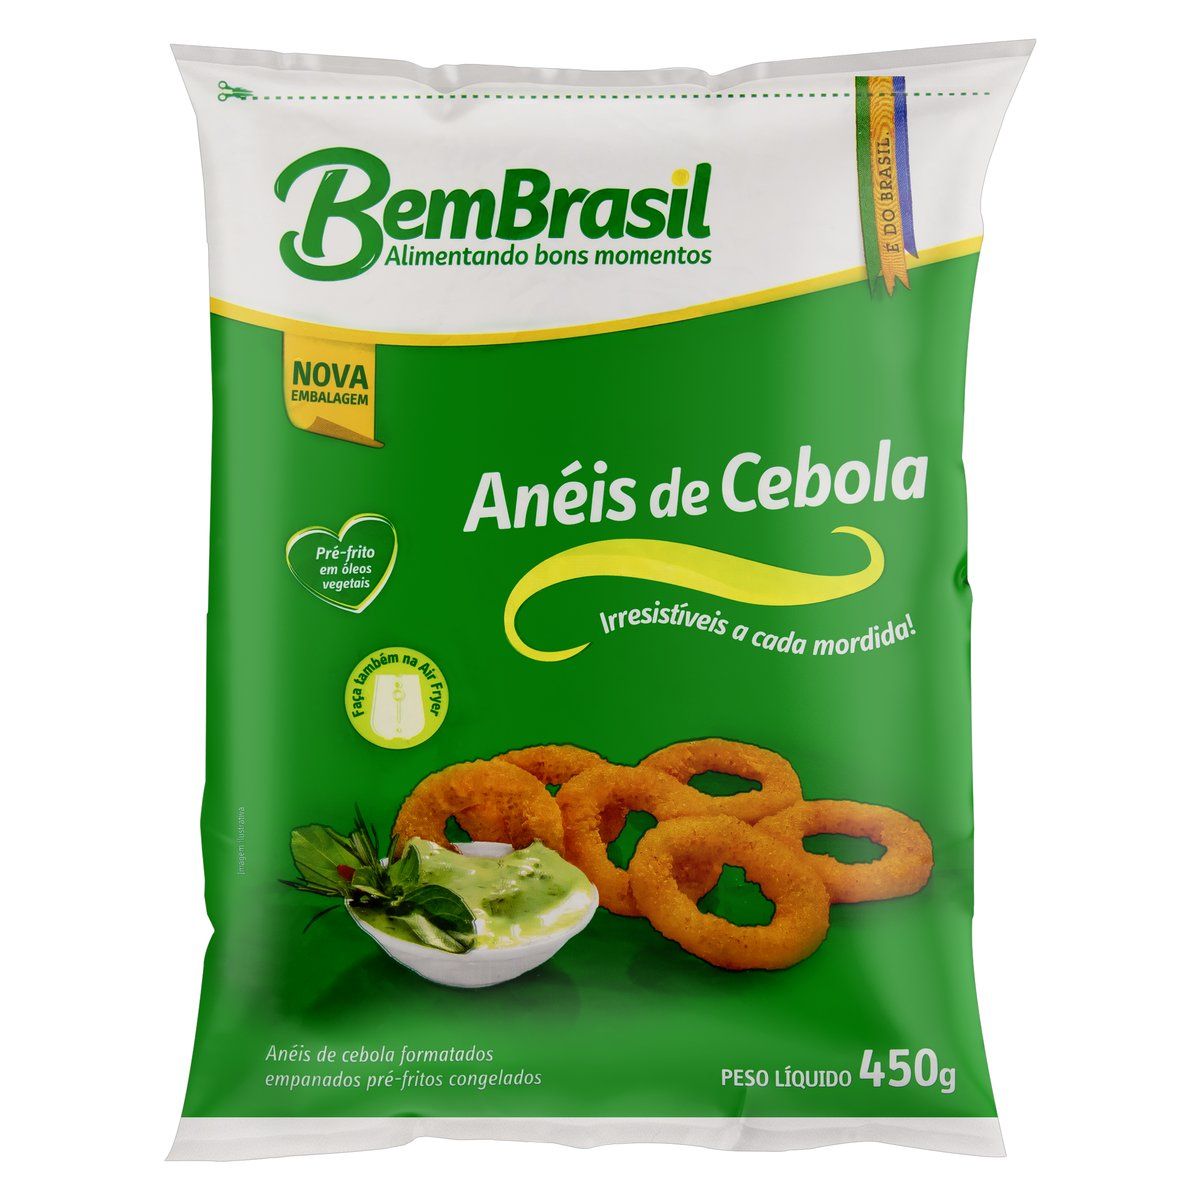 Anéis de Cebola Empanados Pré-Fritos Congelados Bem Brasil Pacote 450g